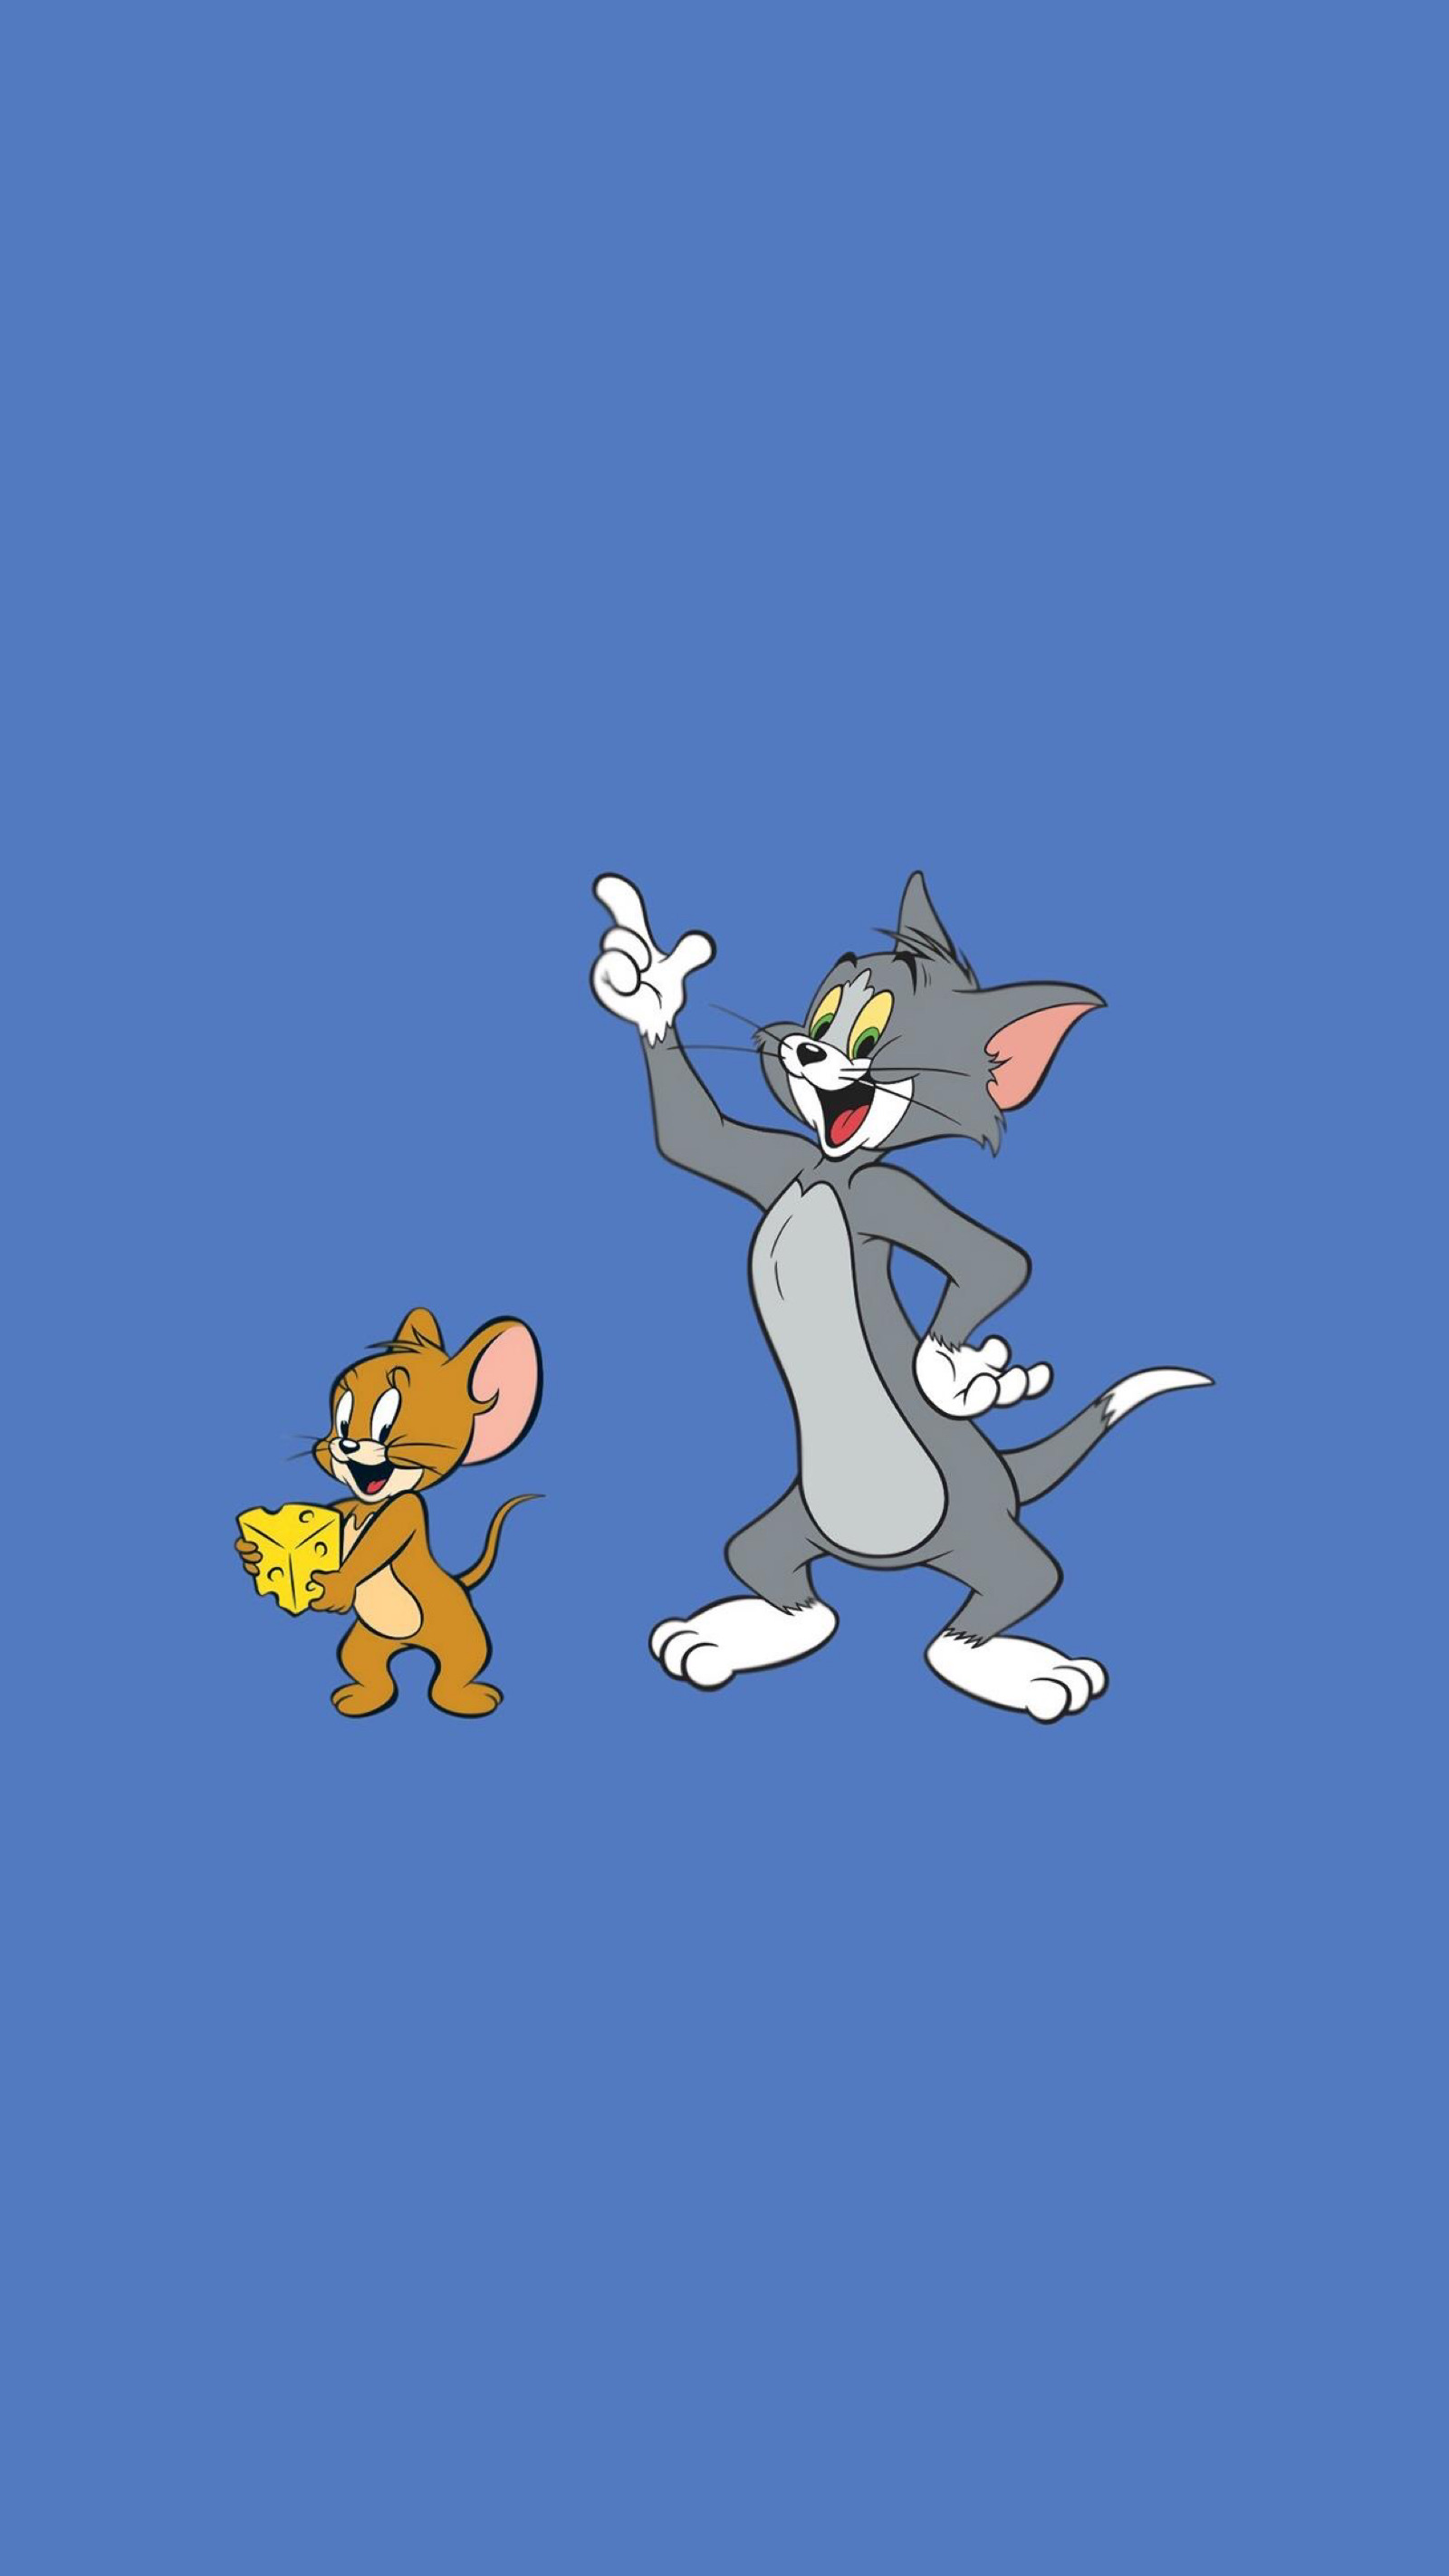 老鼠猫的游戏_下载猫和老鼠游戏大全_猫老鼠小游戏